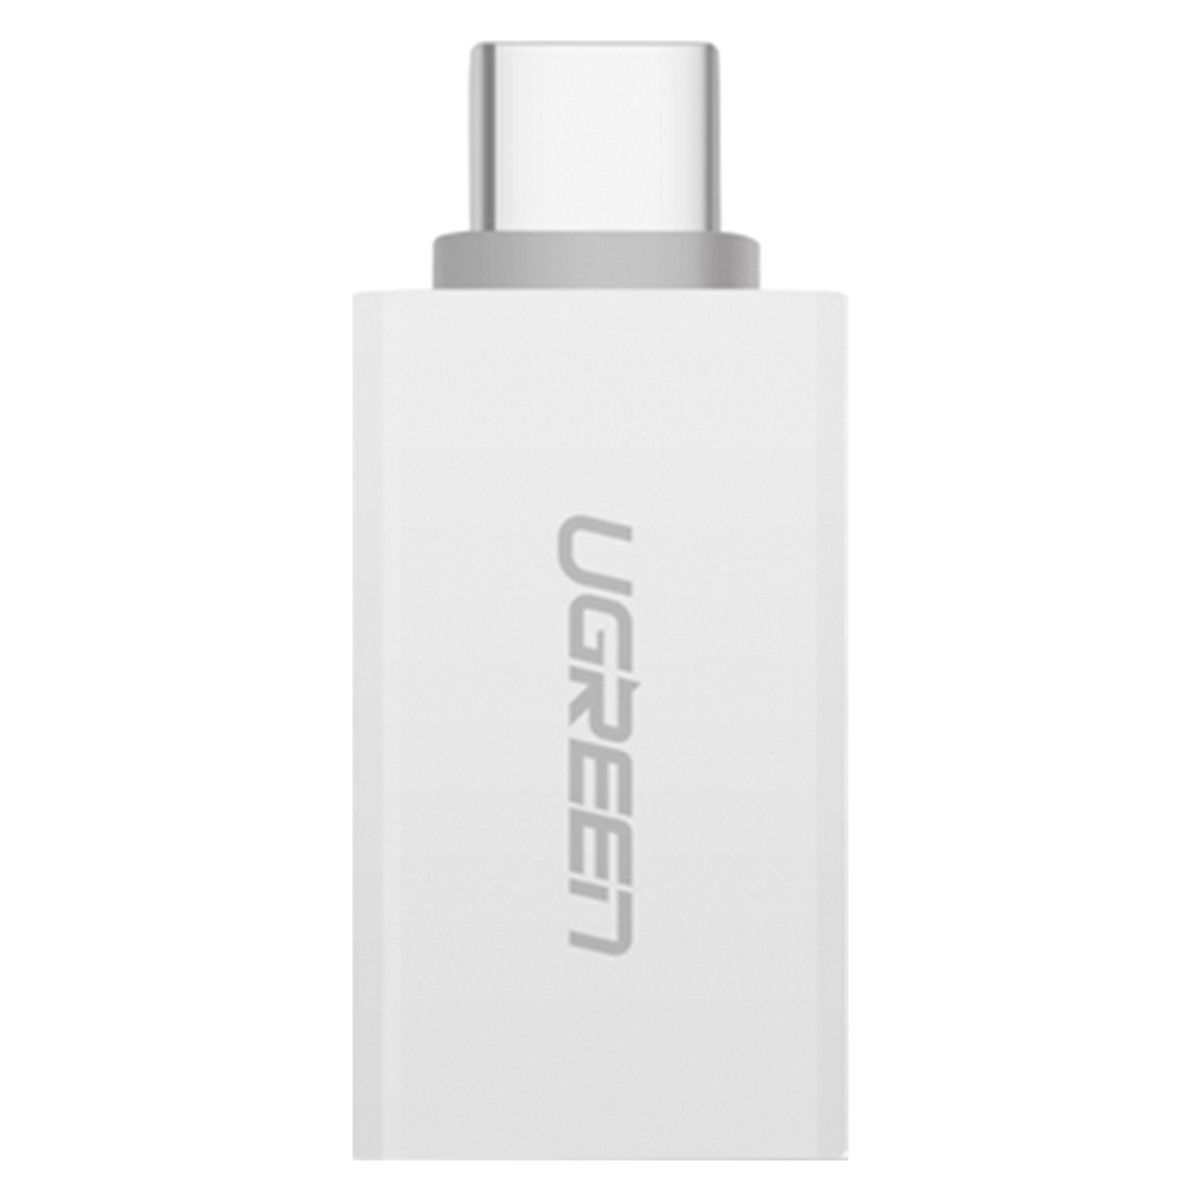 Đầu Chuyển Đổi Ugreen USB Type-C Sang USB 3.0 30155 - Hàng Chính Hãng